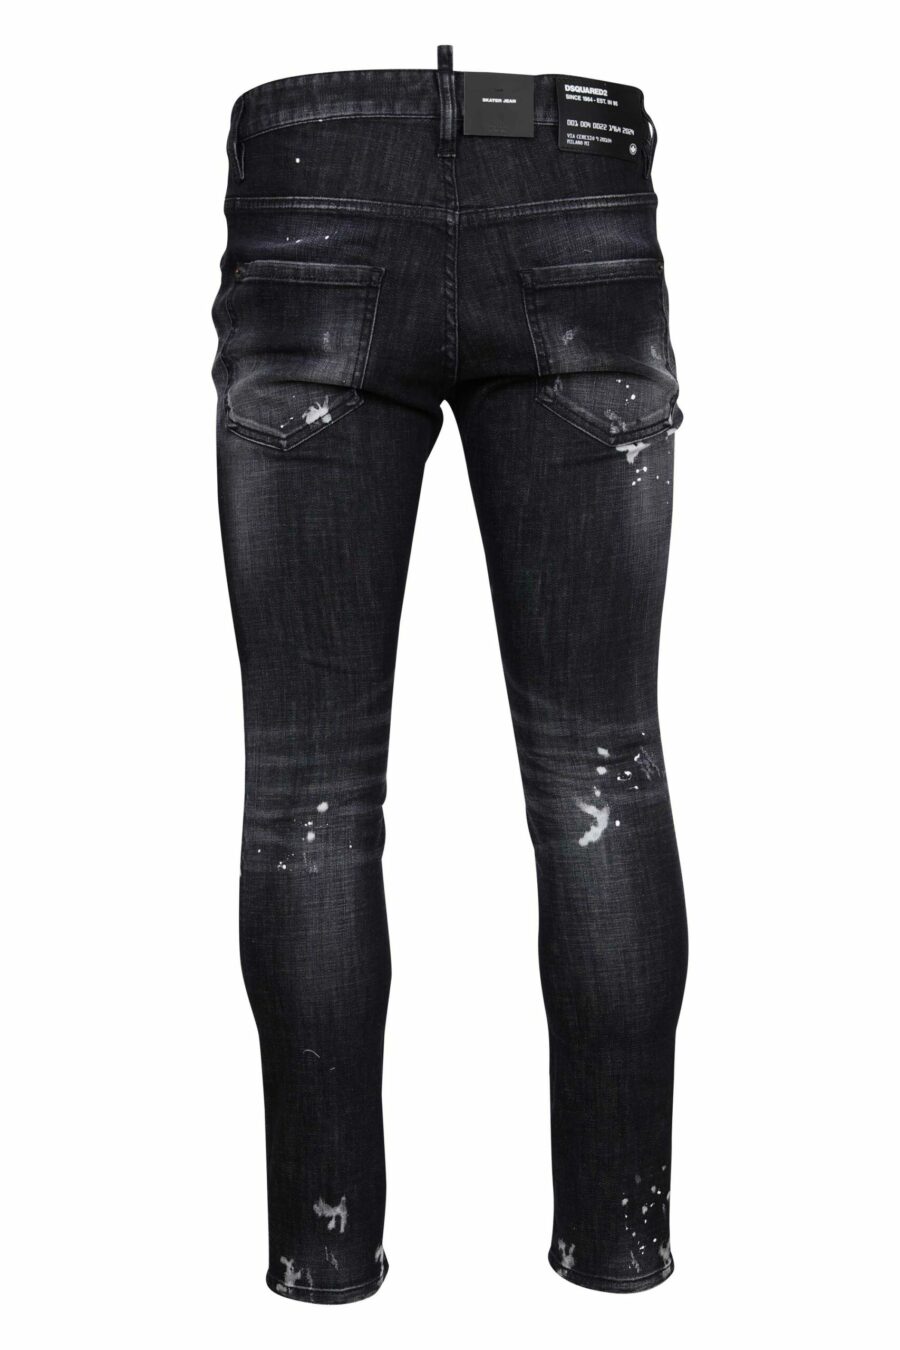 Pantalón negro "skater jean" con rotos y semidesgastado - 8054148300746 1 scaled